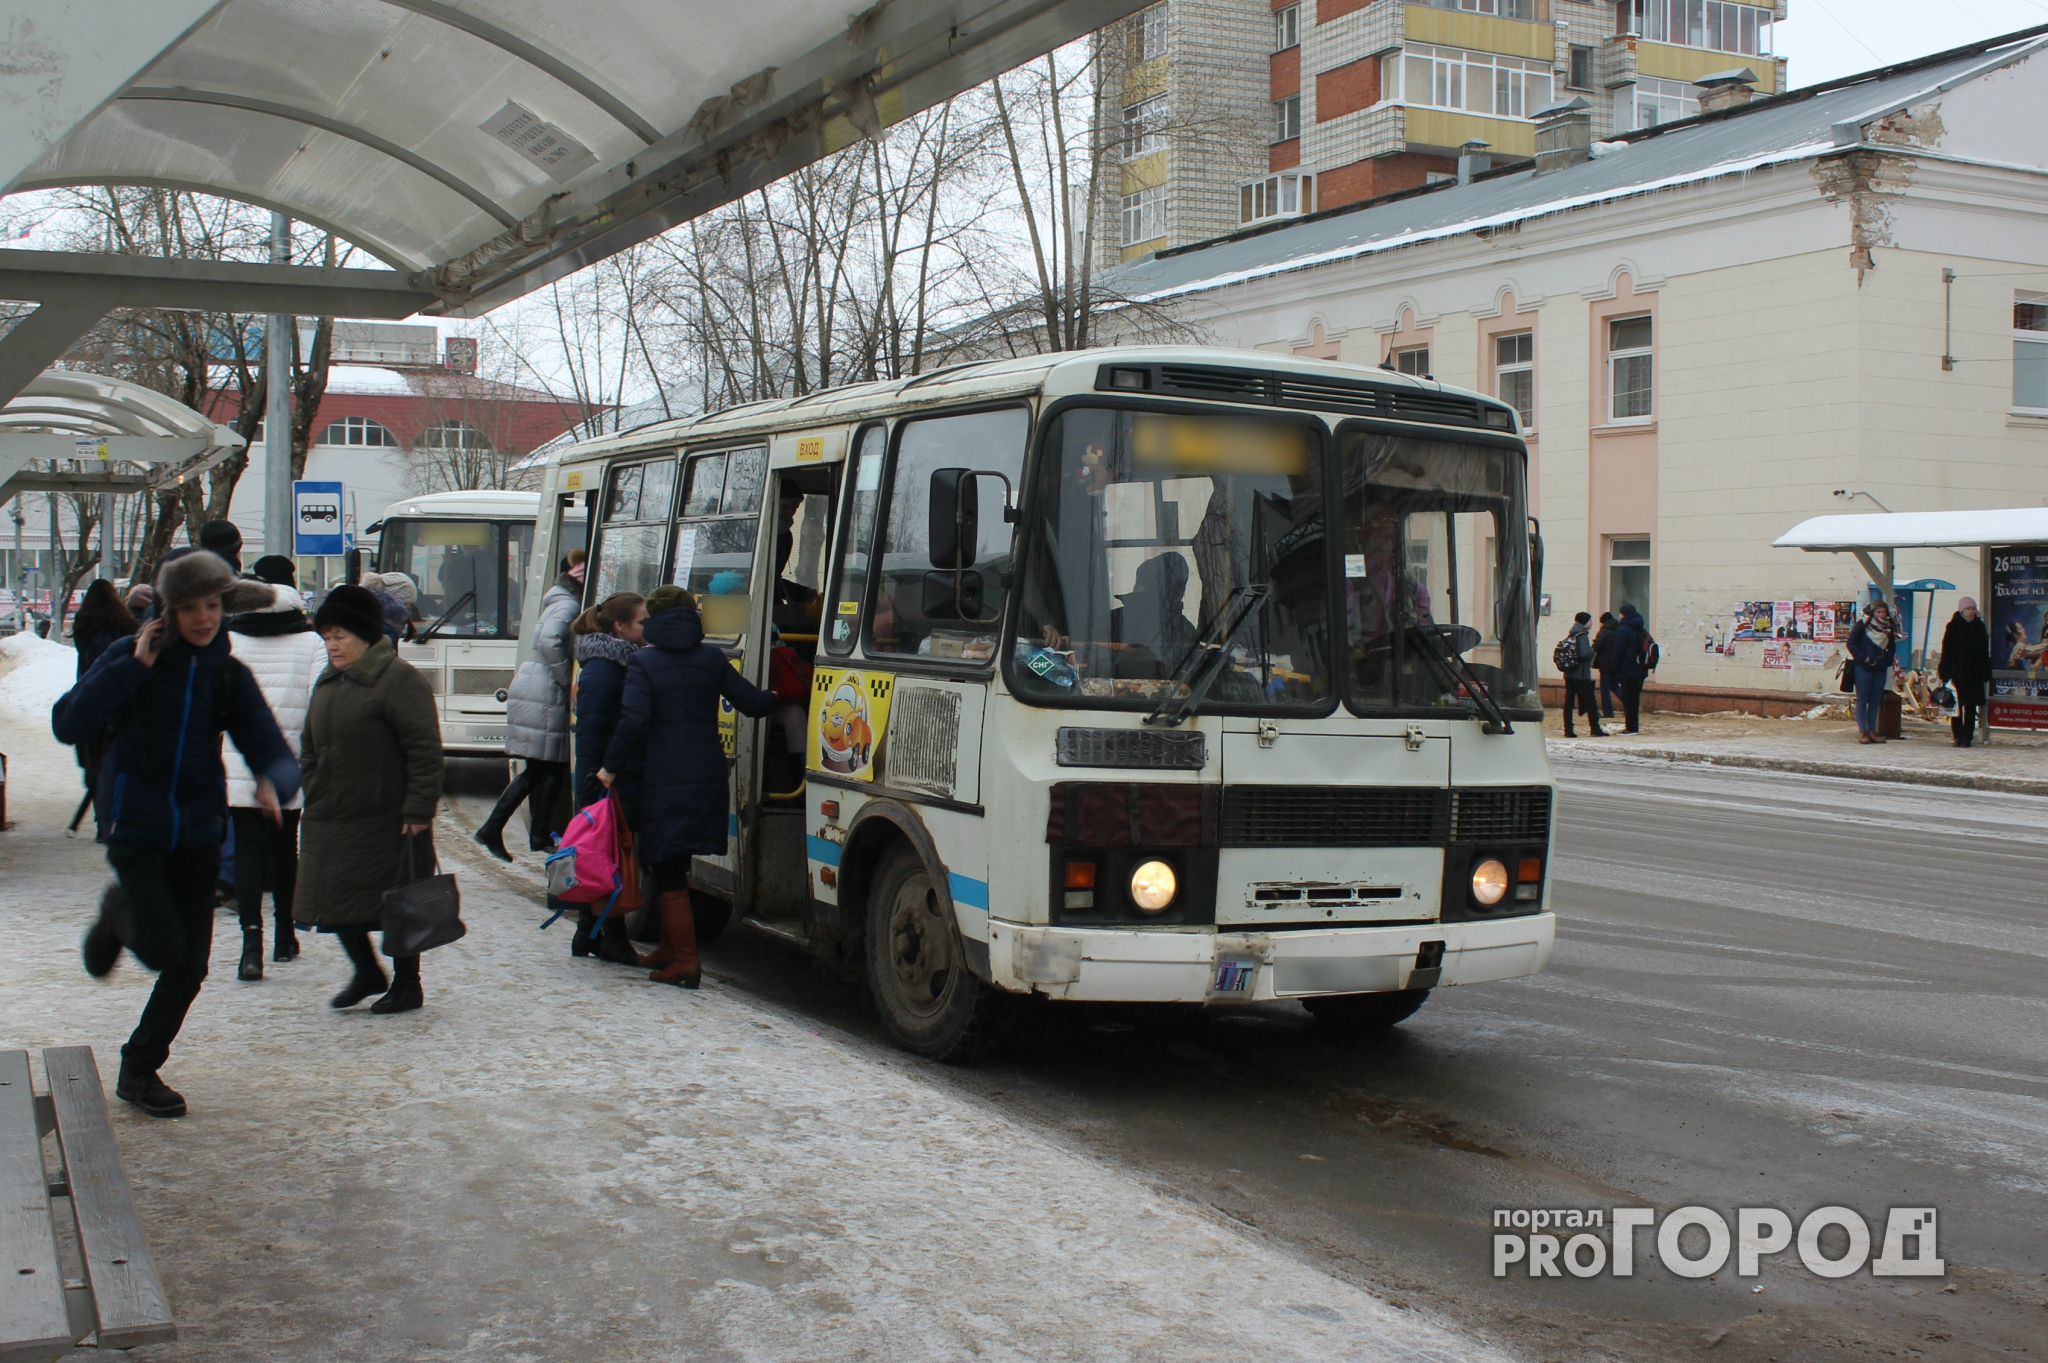 Кондуктор сыктывкарского автобуса обматерила женщину при детях